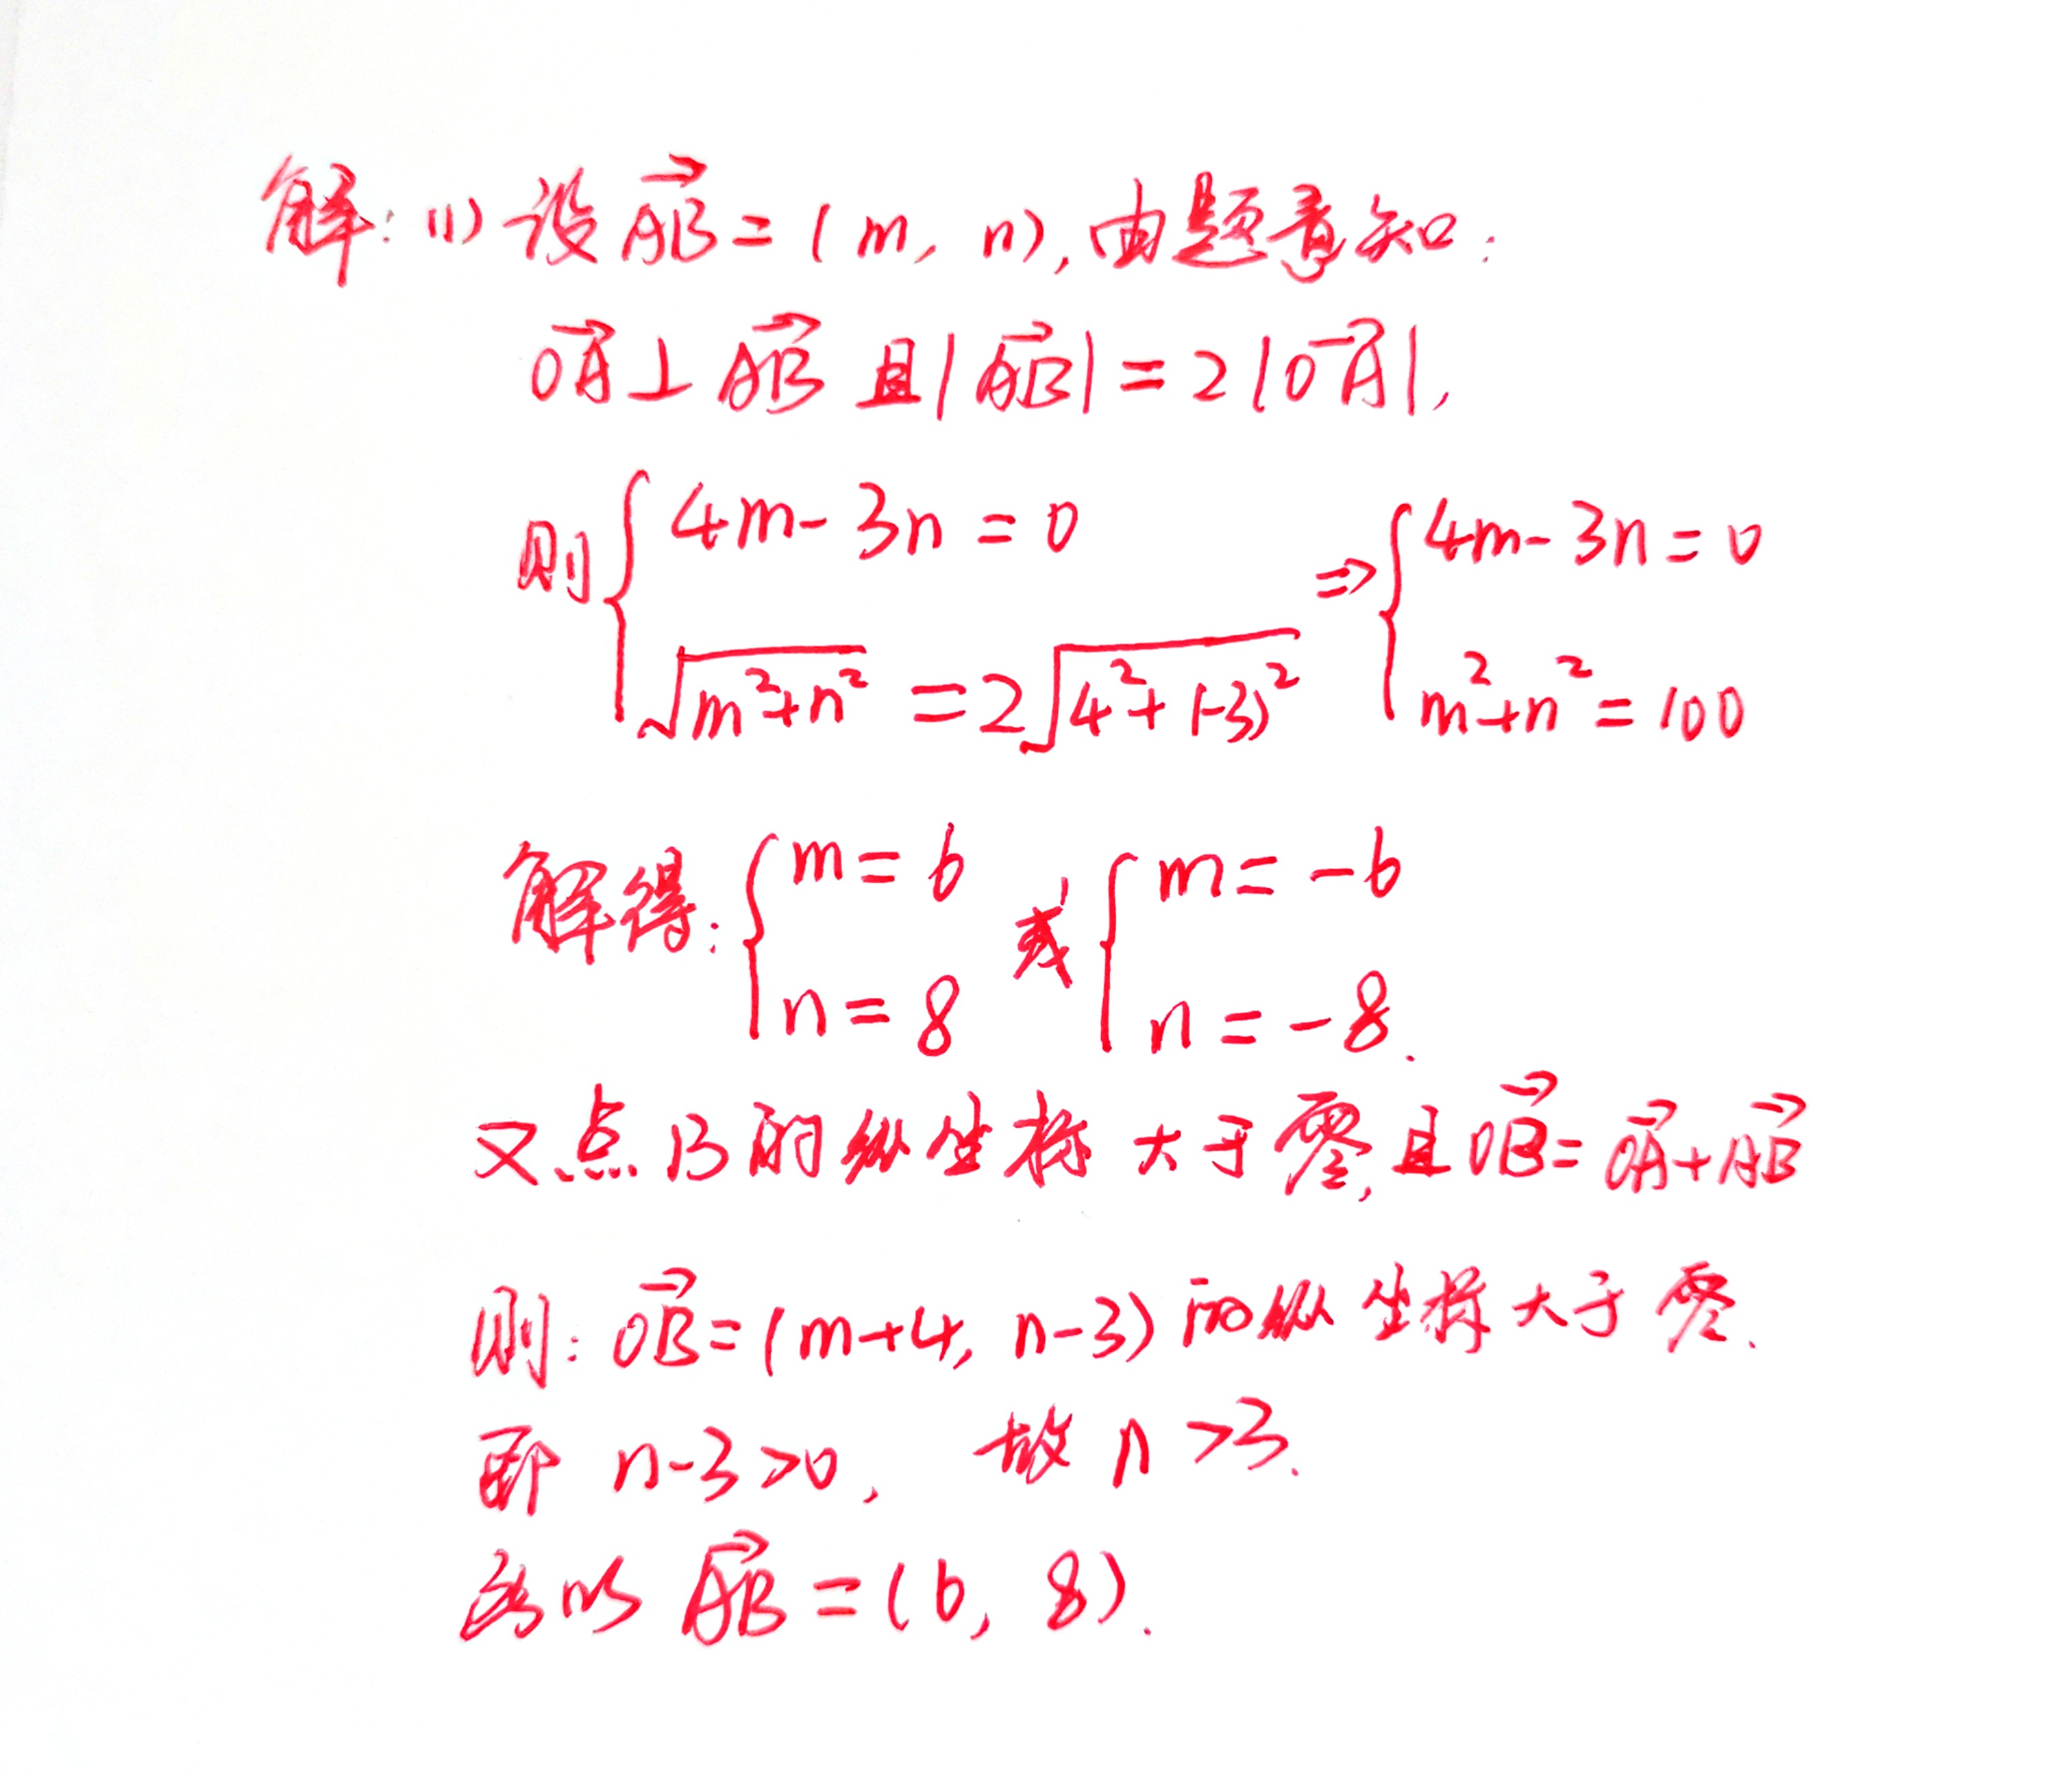 2003年上海高考数学真题,看似挺难,掌握方法就是送分题